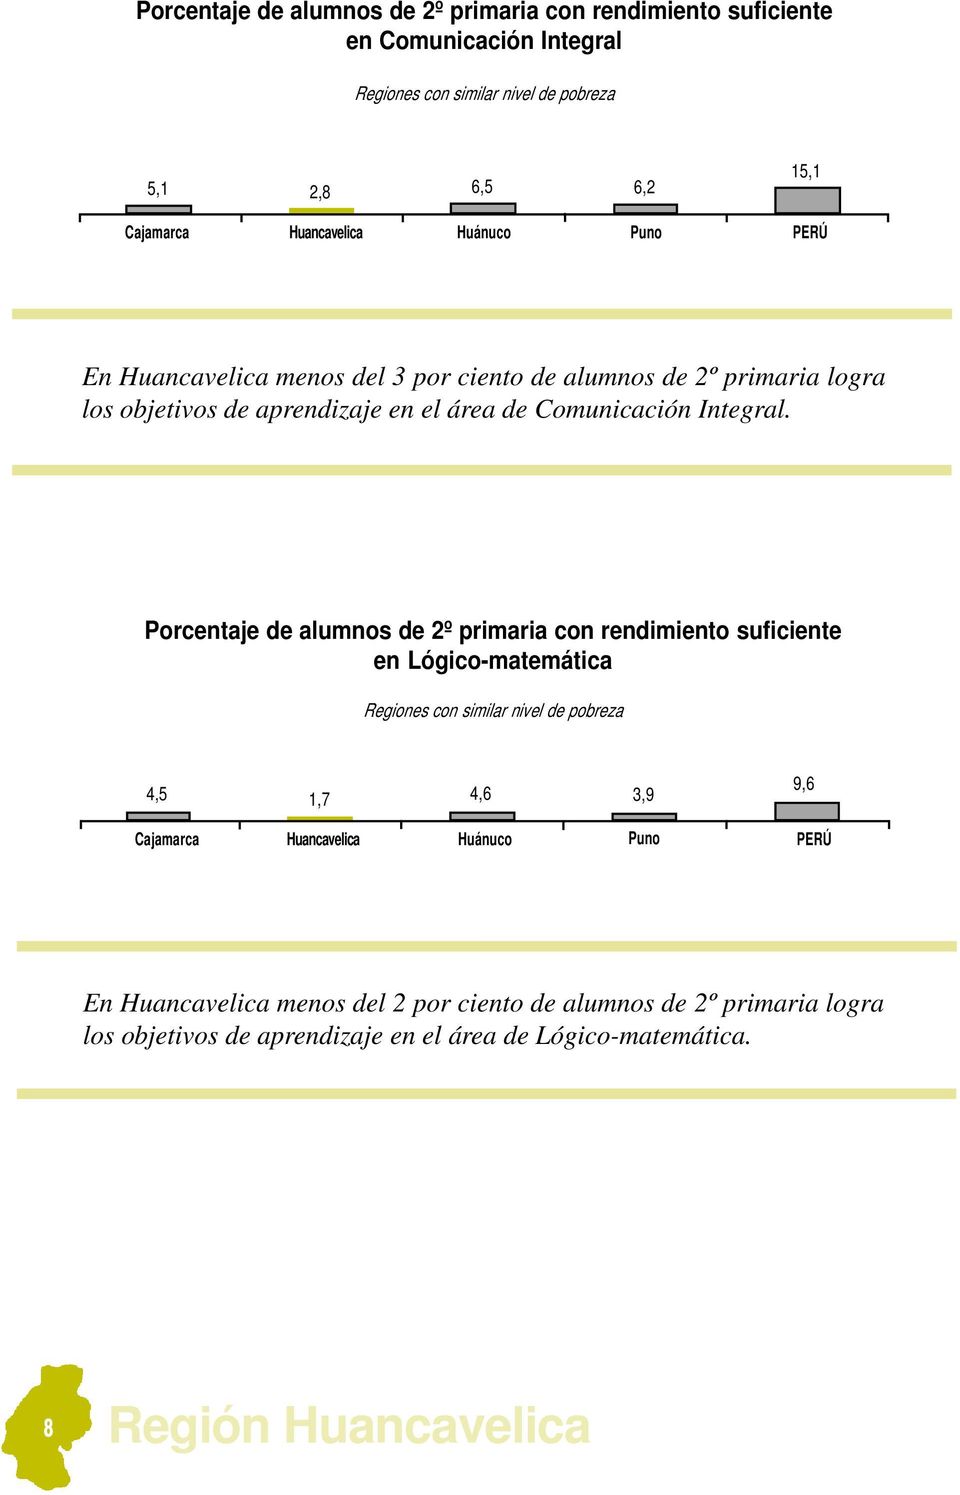 Porcentaje de alumnos de 2º primaria con rendimiento suficiente en Lógico-matemática 4,5 1,7 4,6 3,9 9,6 En Huancavelica menos